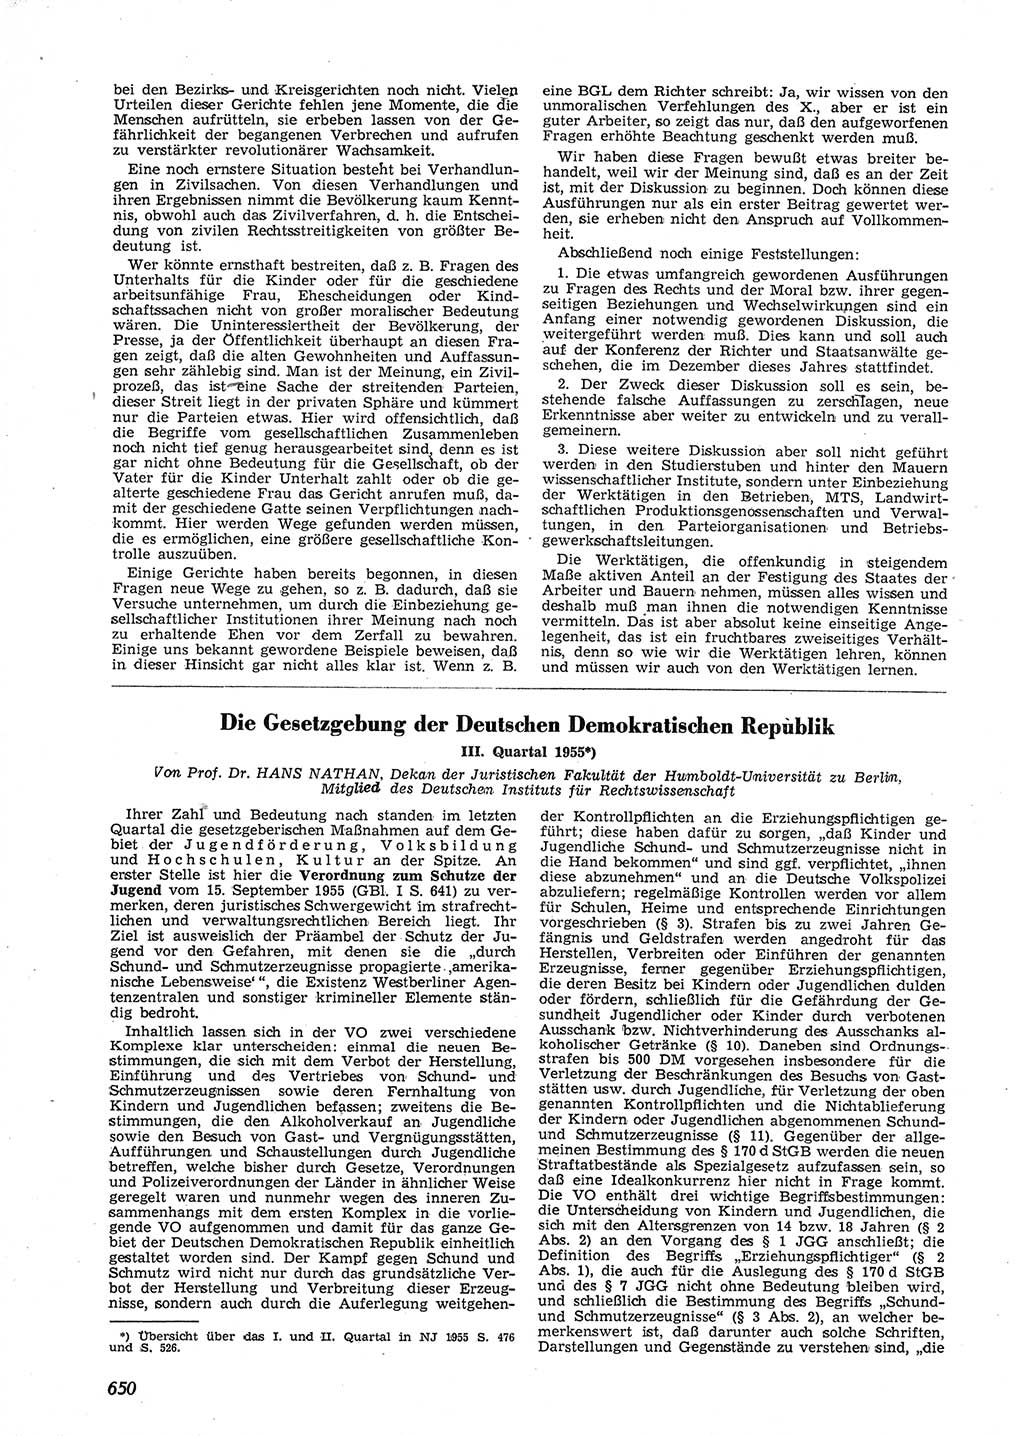 Neue Justiz (NJ), Zeitschrift für Recht und Rechtswissenschaft [Deutsche Demokratische Republik (DDR)], 9. Jahrgang 1955, Seite 650 (NJ DDR 1955, S. 650)